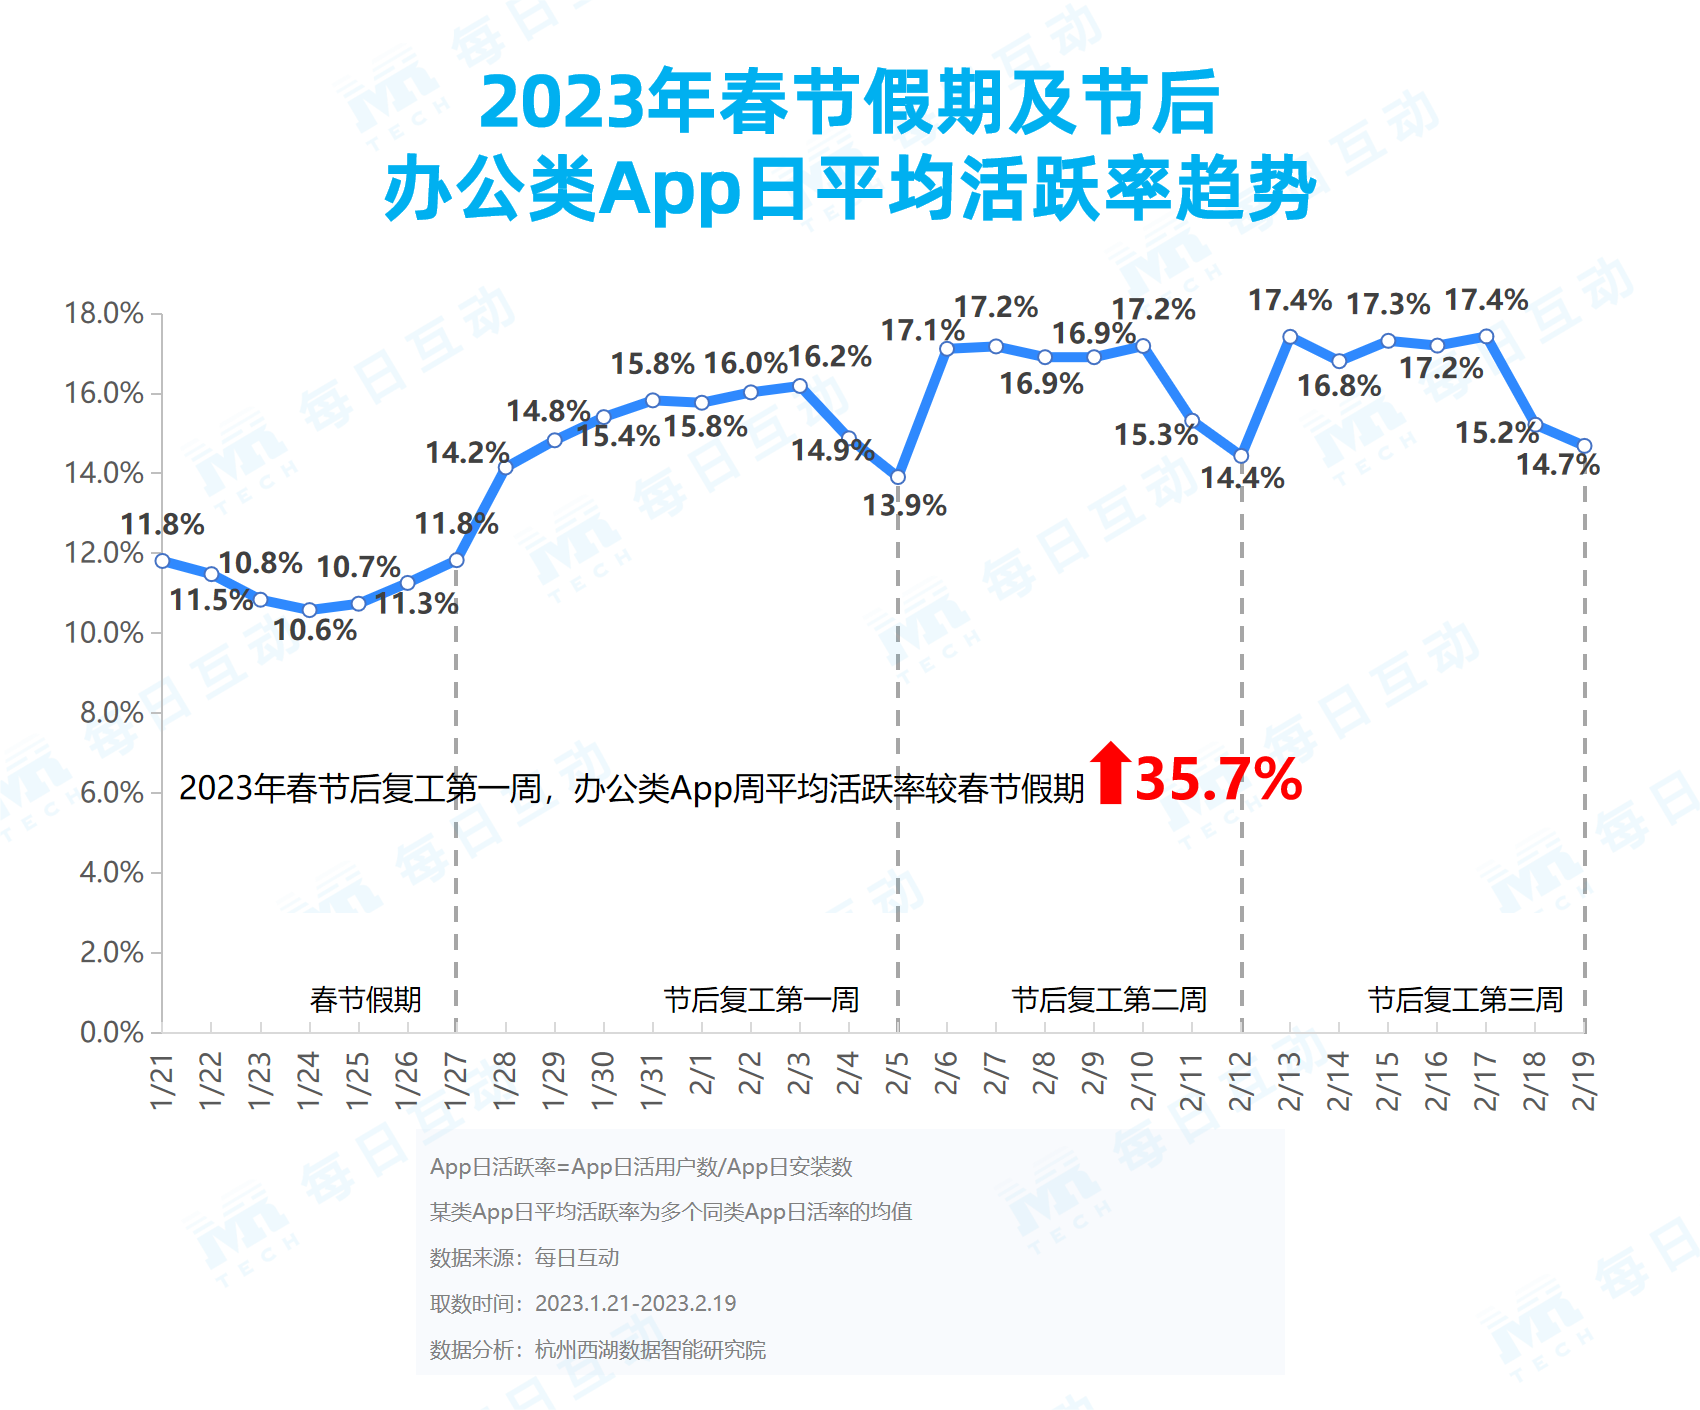 5.2023年春节App日均活跃率.png